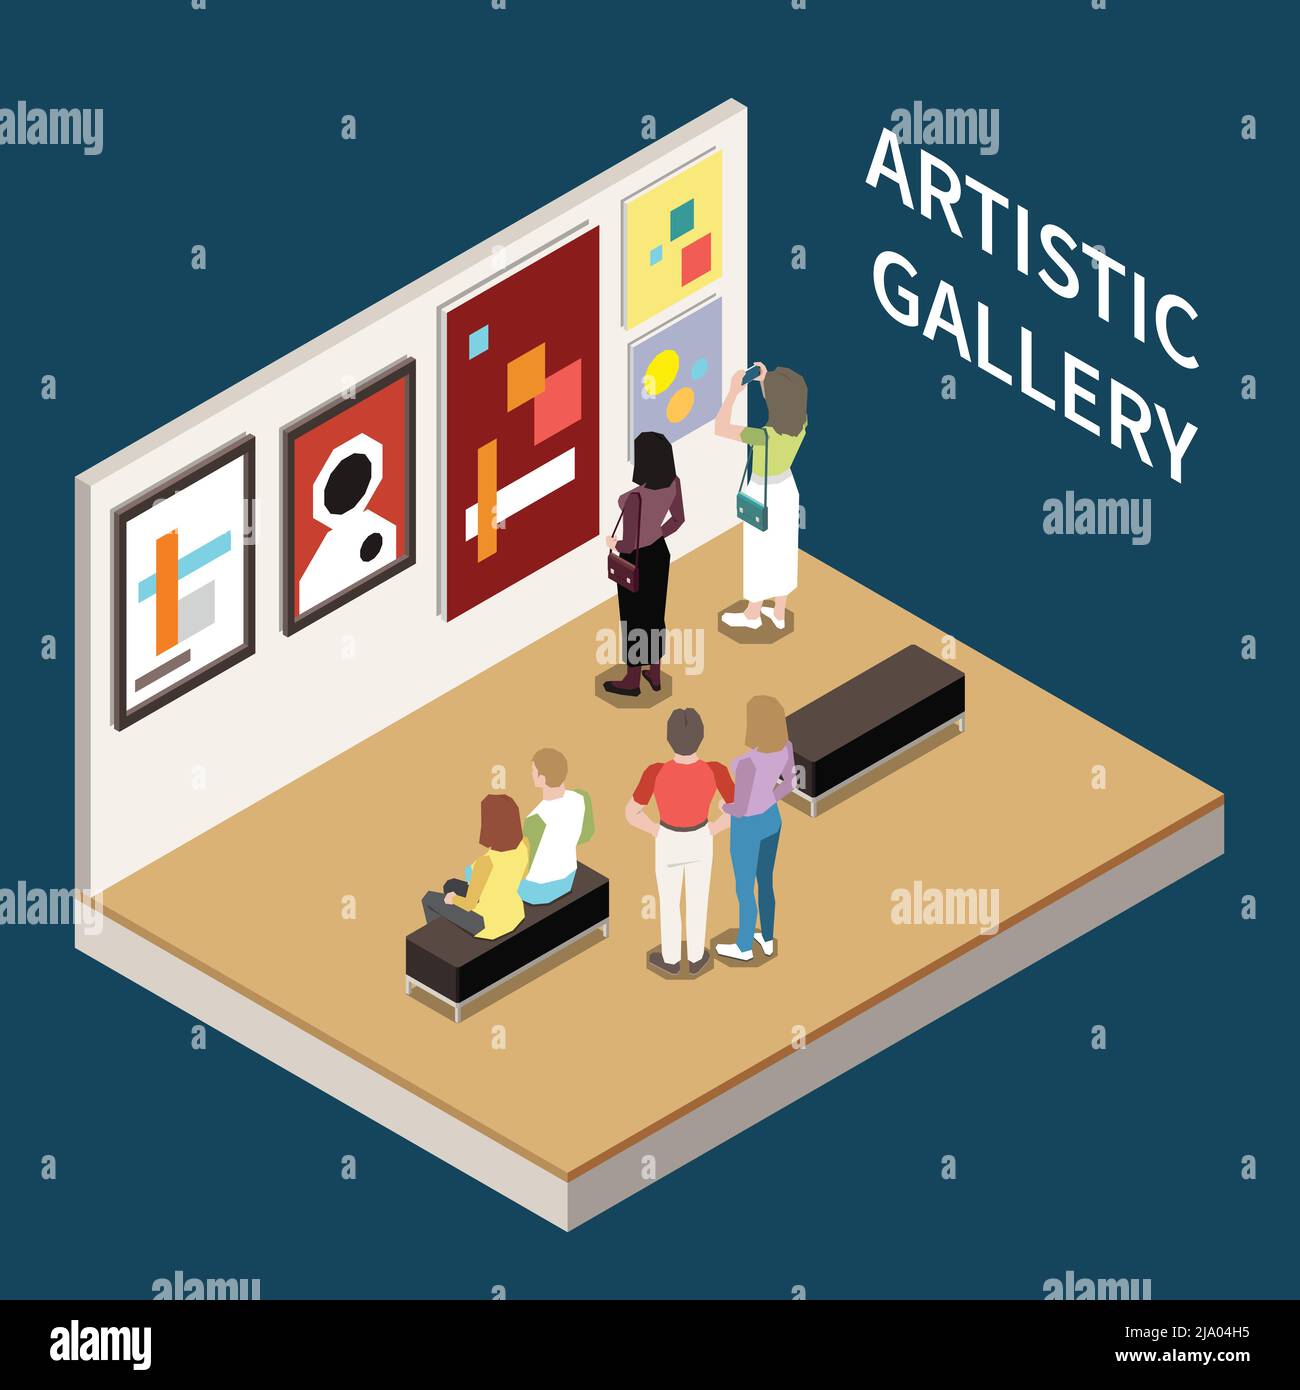 Galleria artistica sfondo isometrico con persone che cercano immagini di artisti moderni illustrazione vettoriale Illustrazione Vettoriale